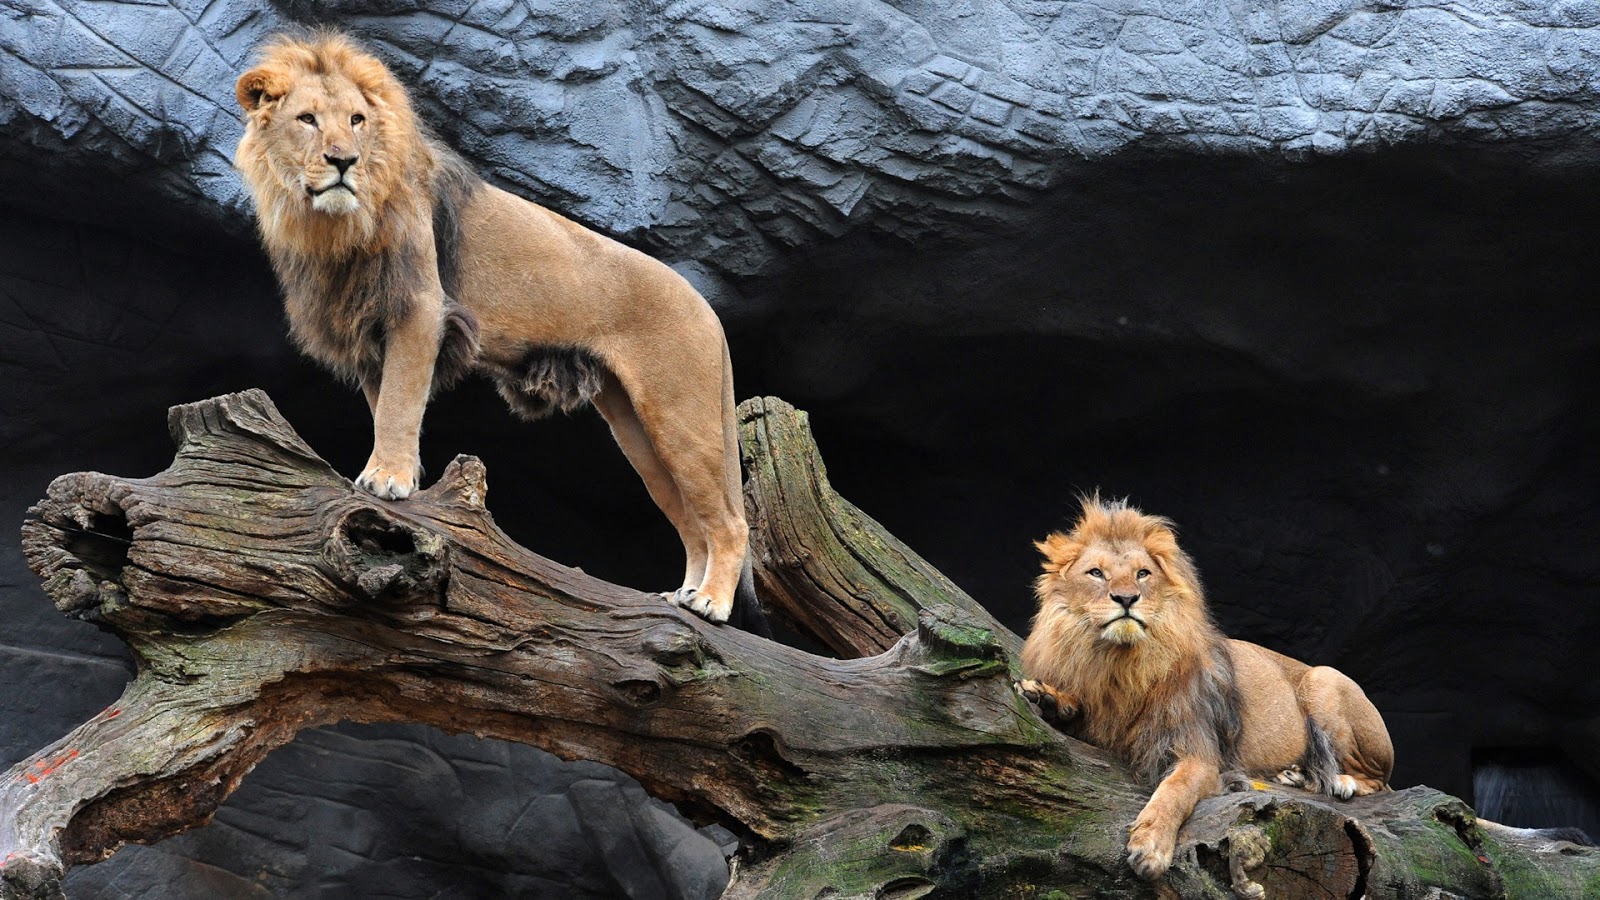 http://3.bp.blogspot.com/-q0zYqwuYhtE/UO1DFcHNhrI/AAAAAAAAOsM/vPkt-CqNHhc/s1600/majestic-pair-of-lions.jpg